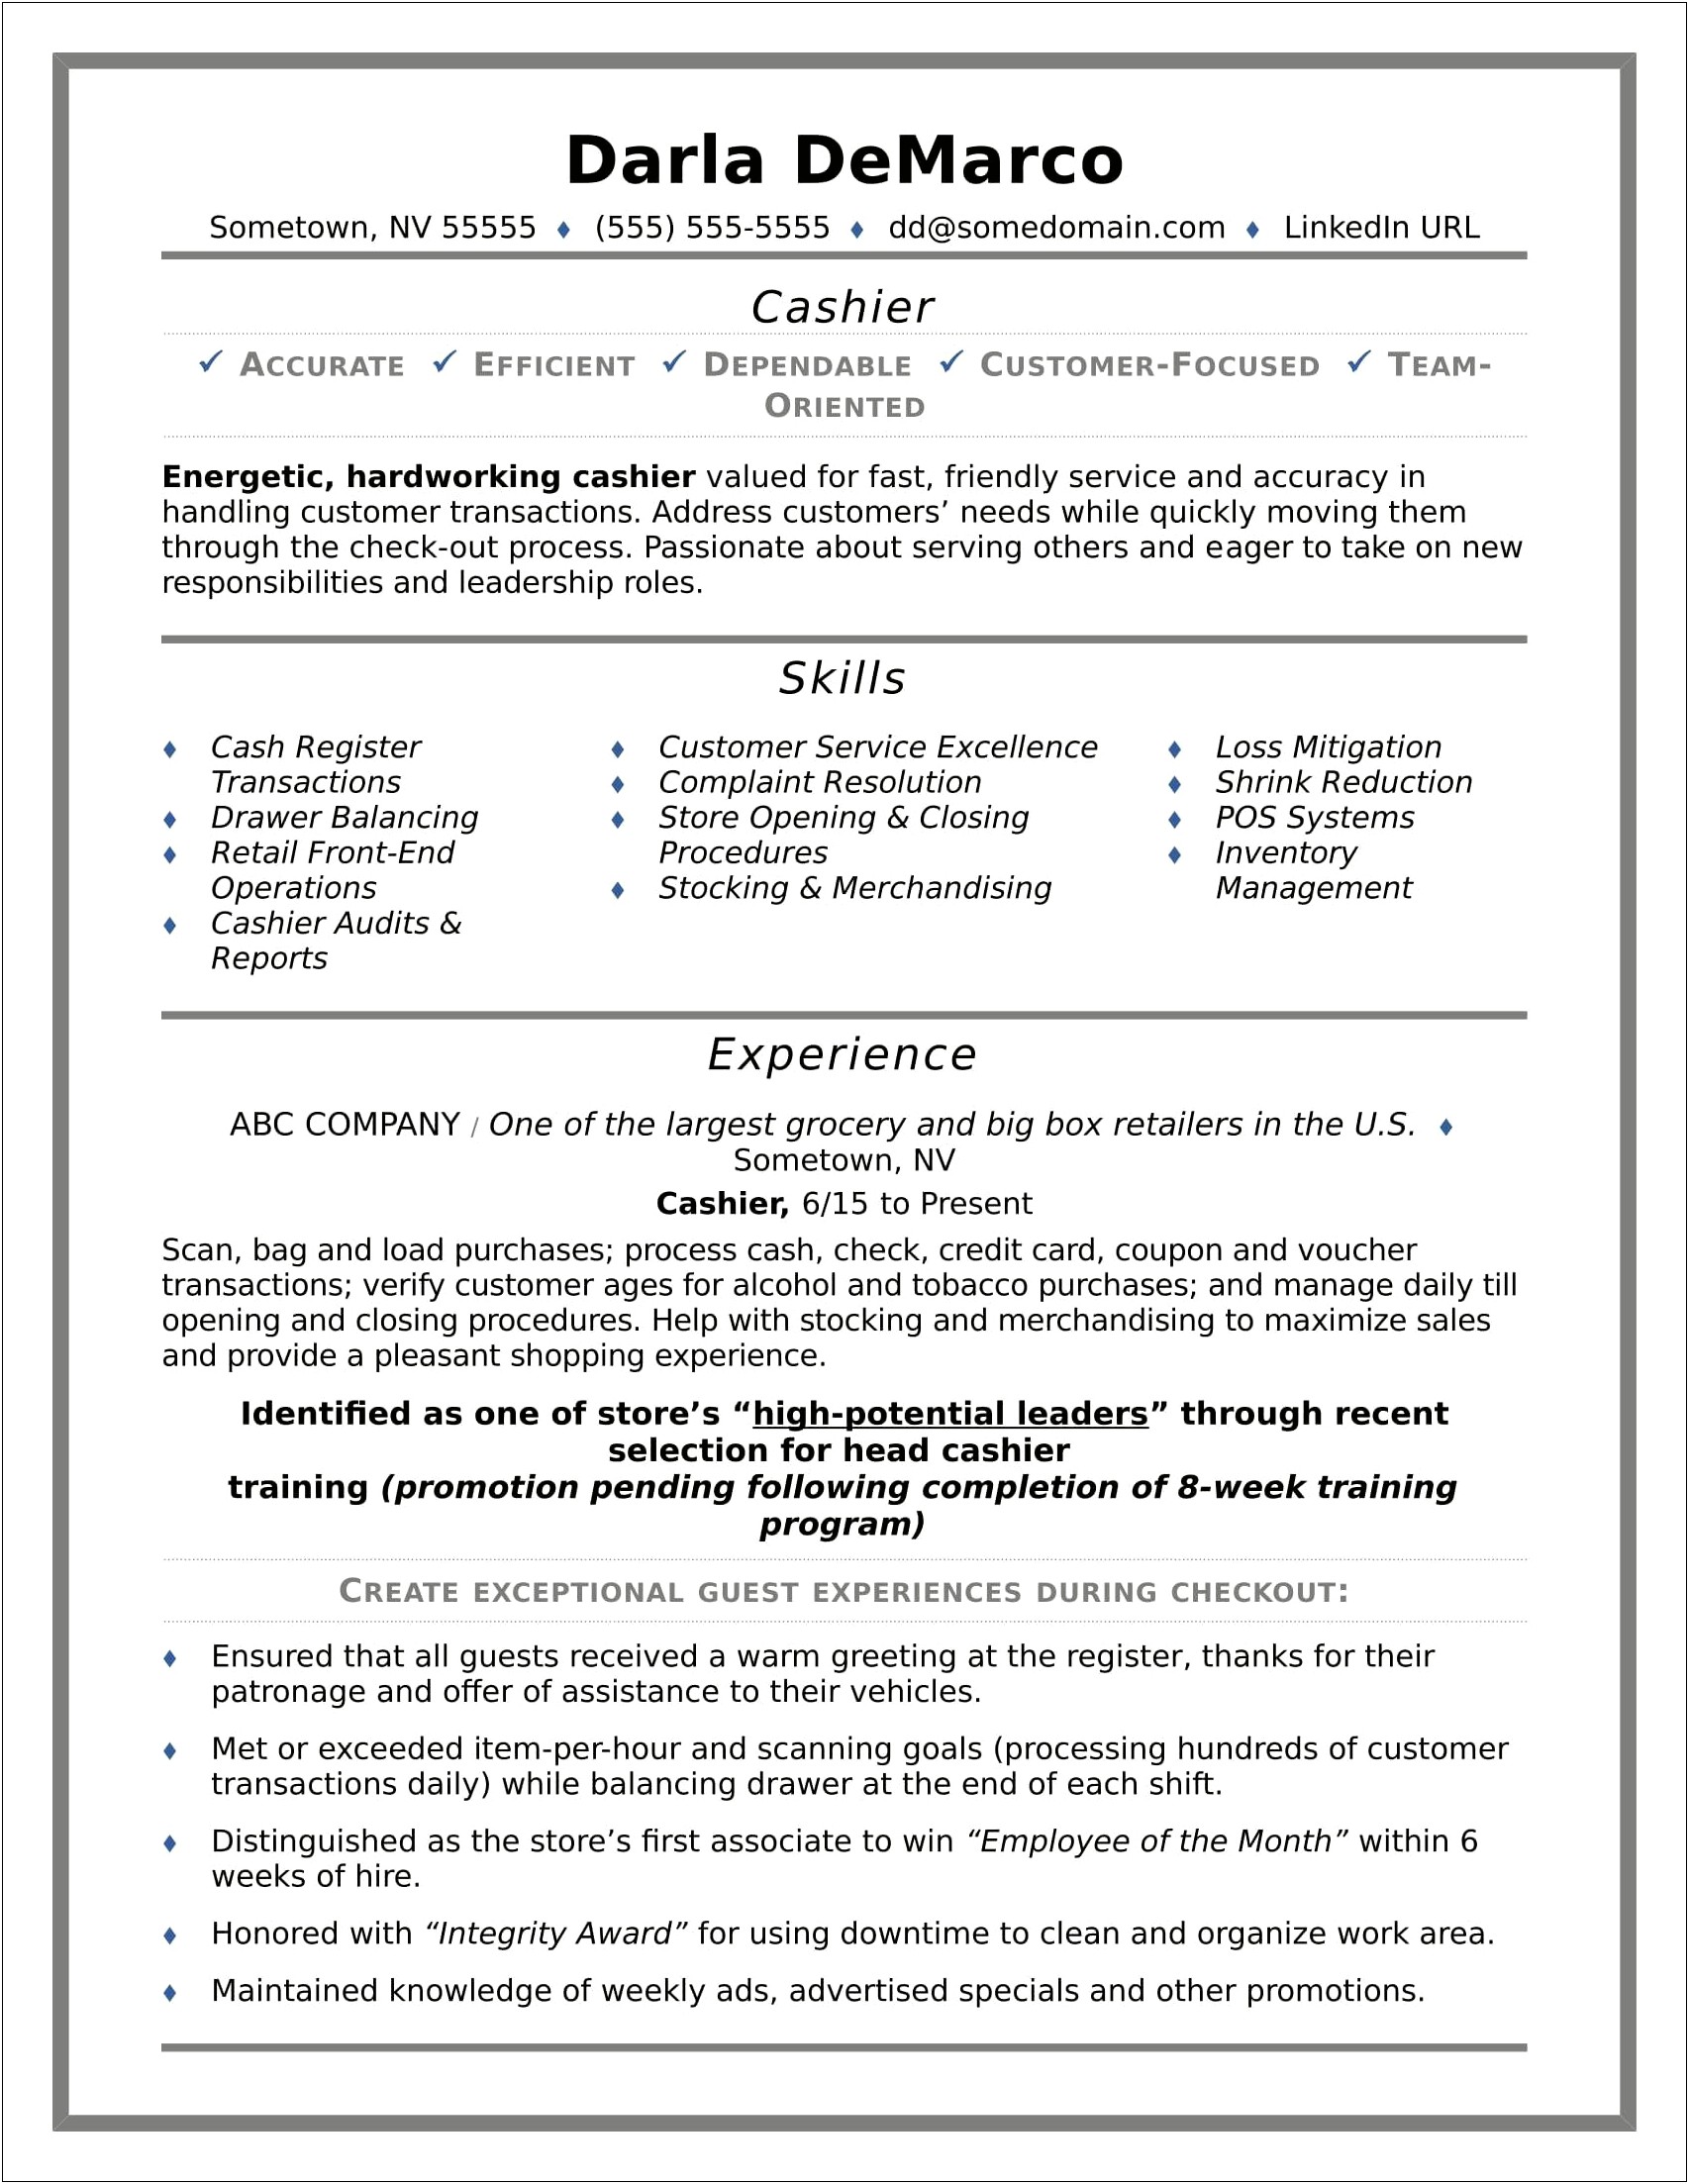 Resume Geniuscashier Resume Sample & Writing Guide Resume Genius